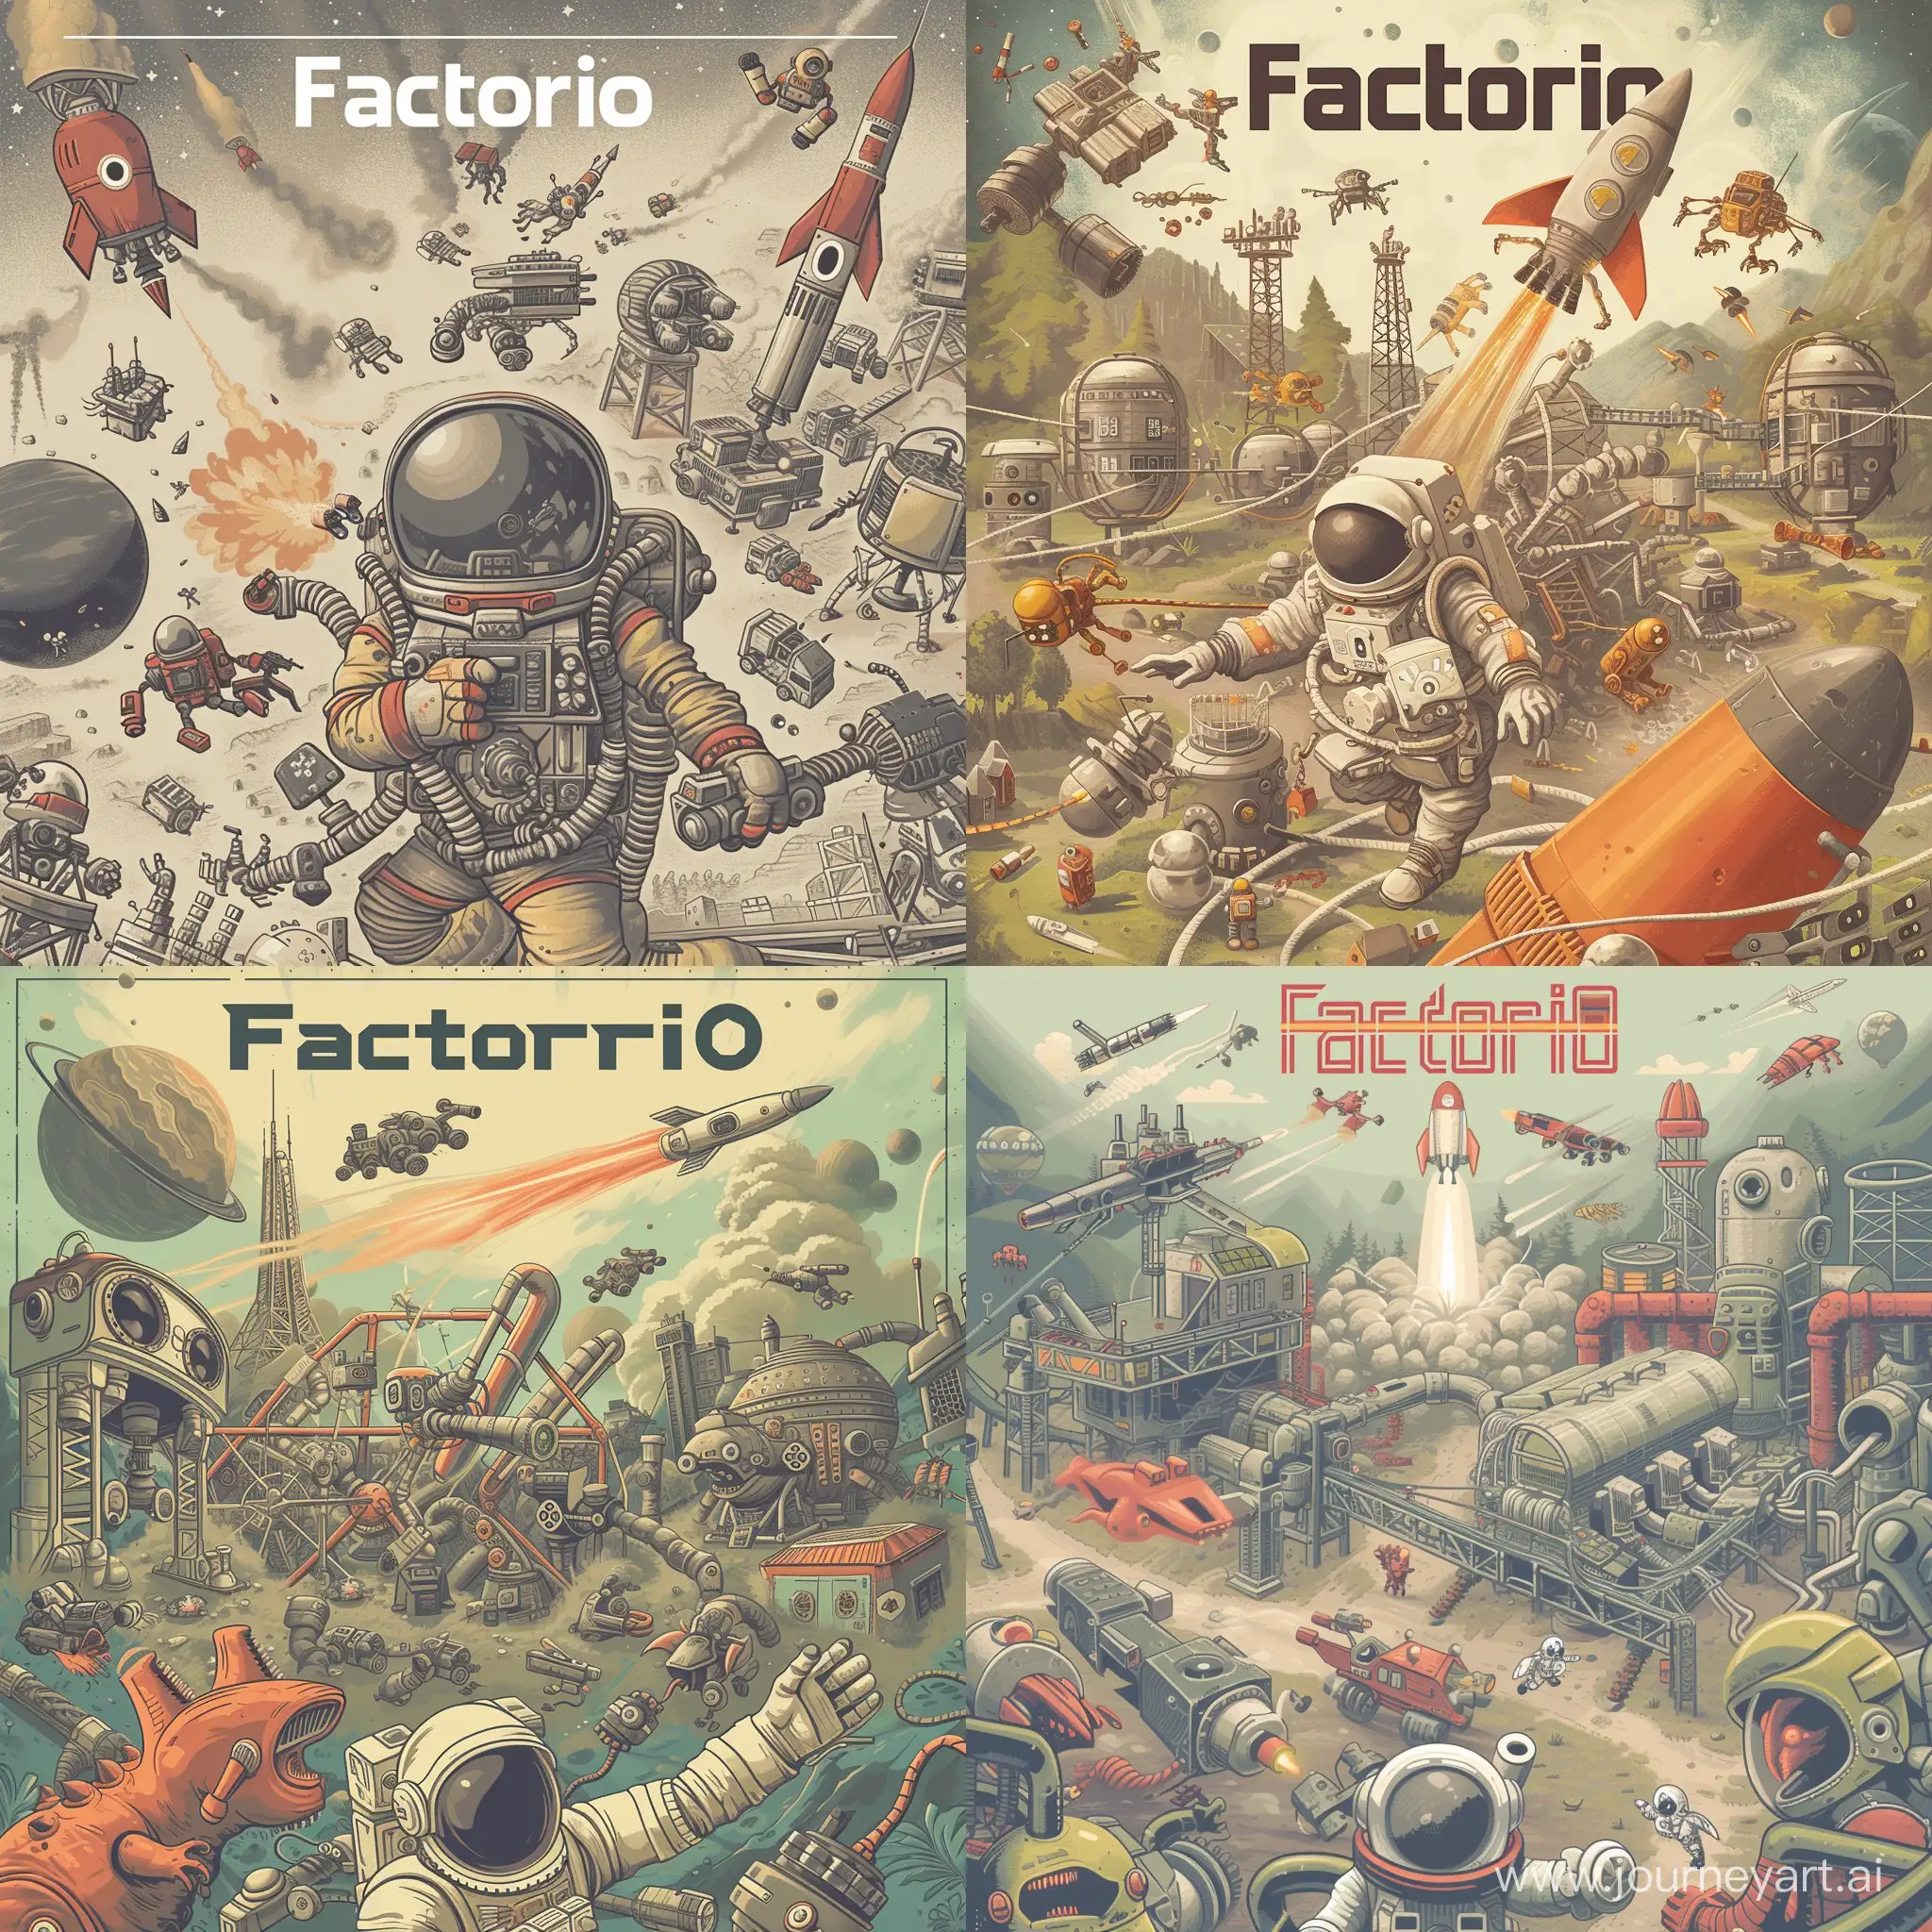 Retro-Space-Adventure-Factorio-Game-Cover